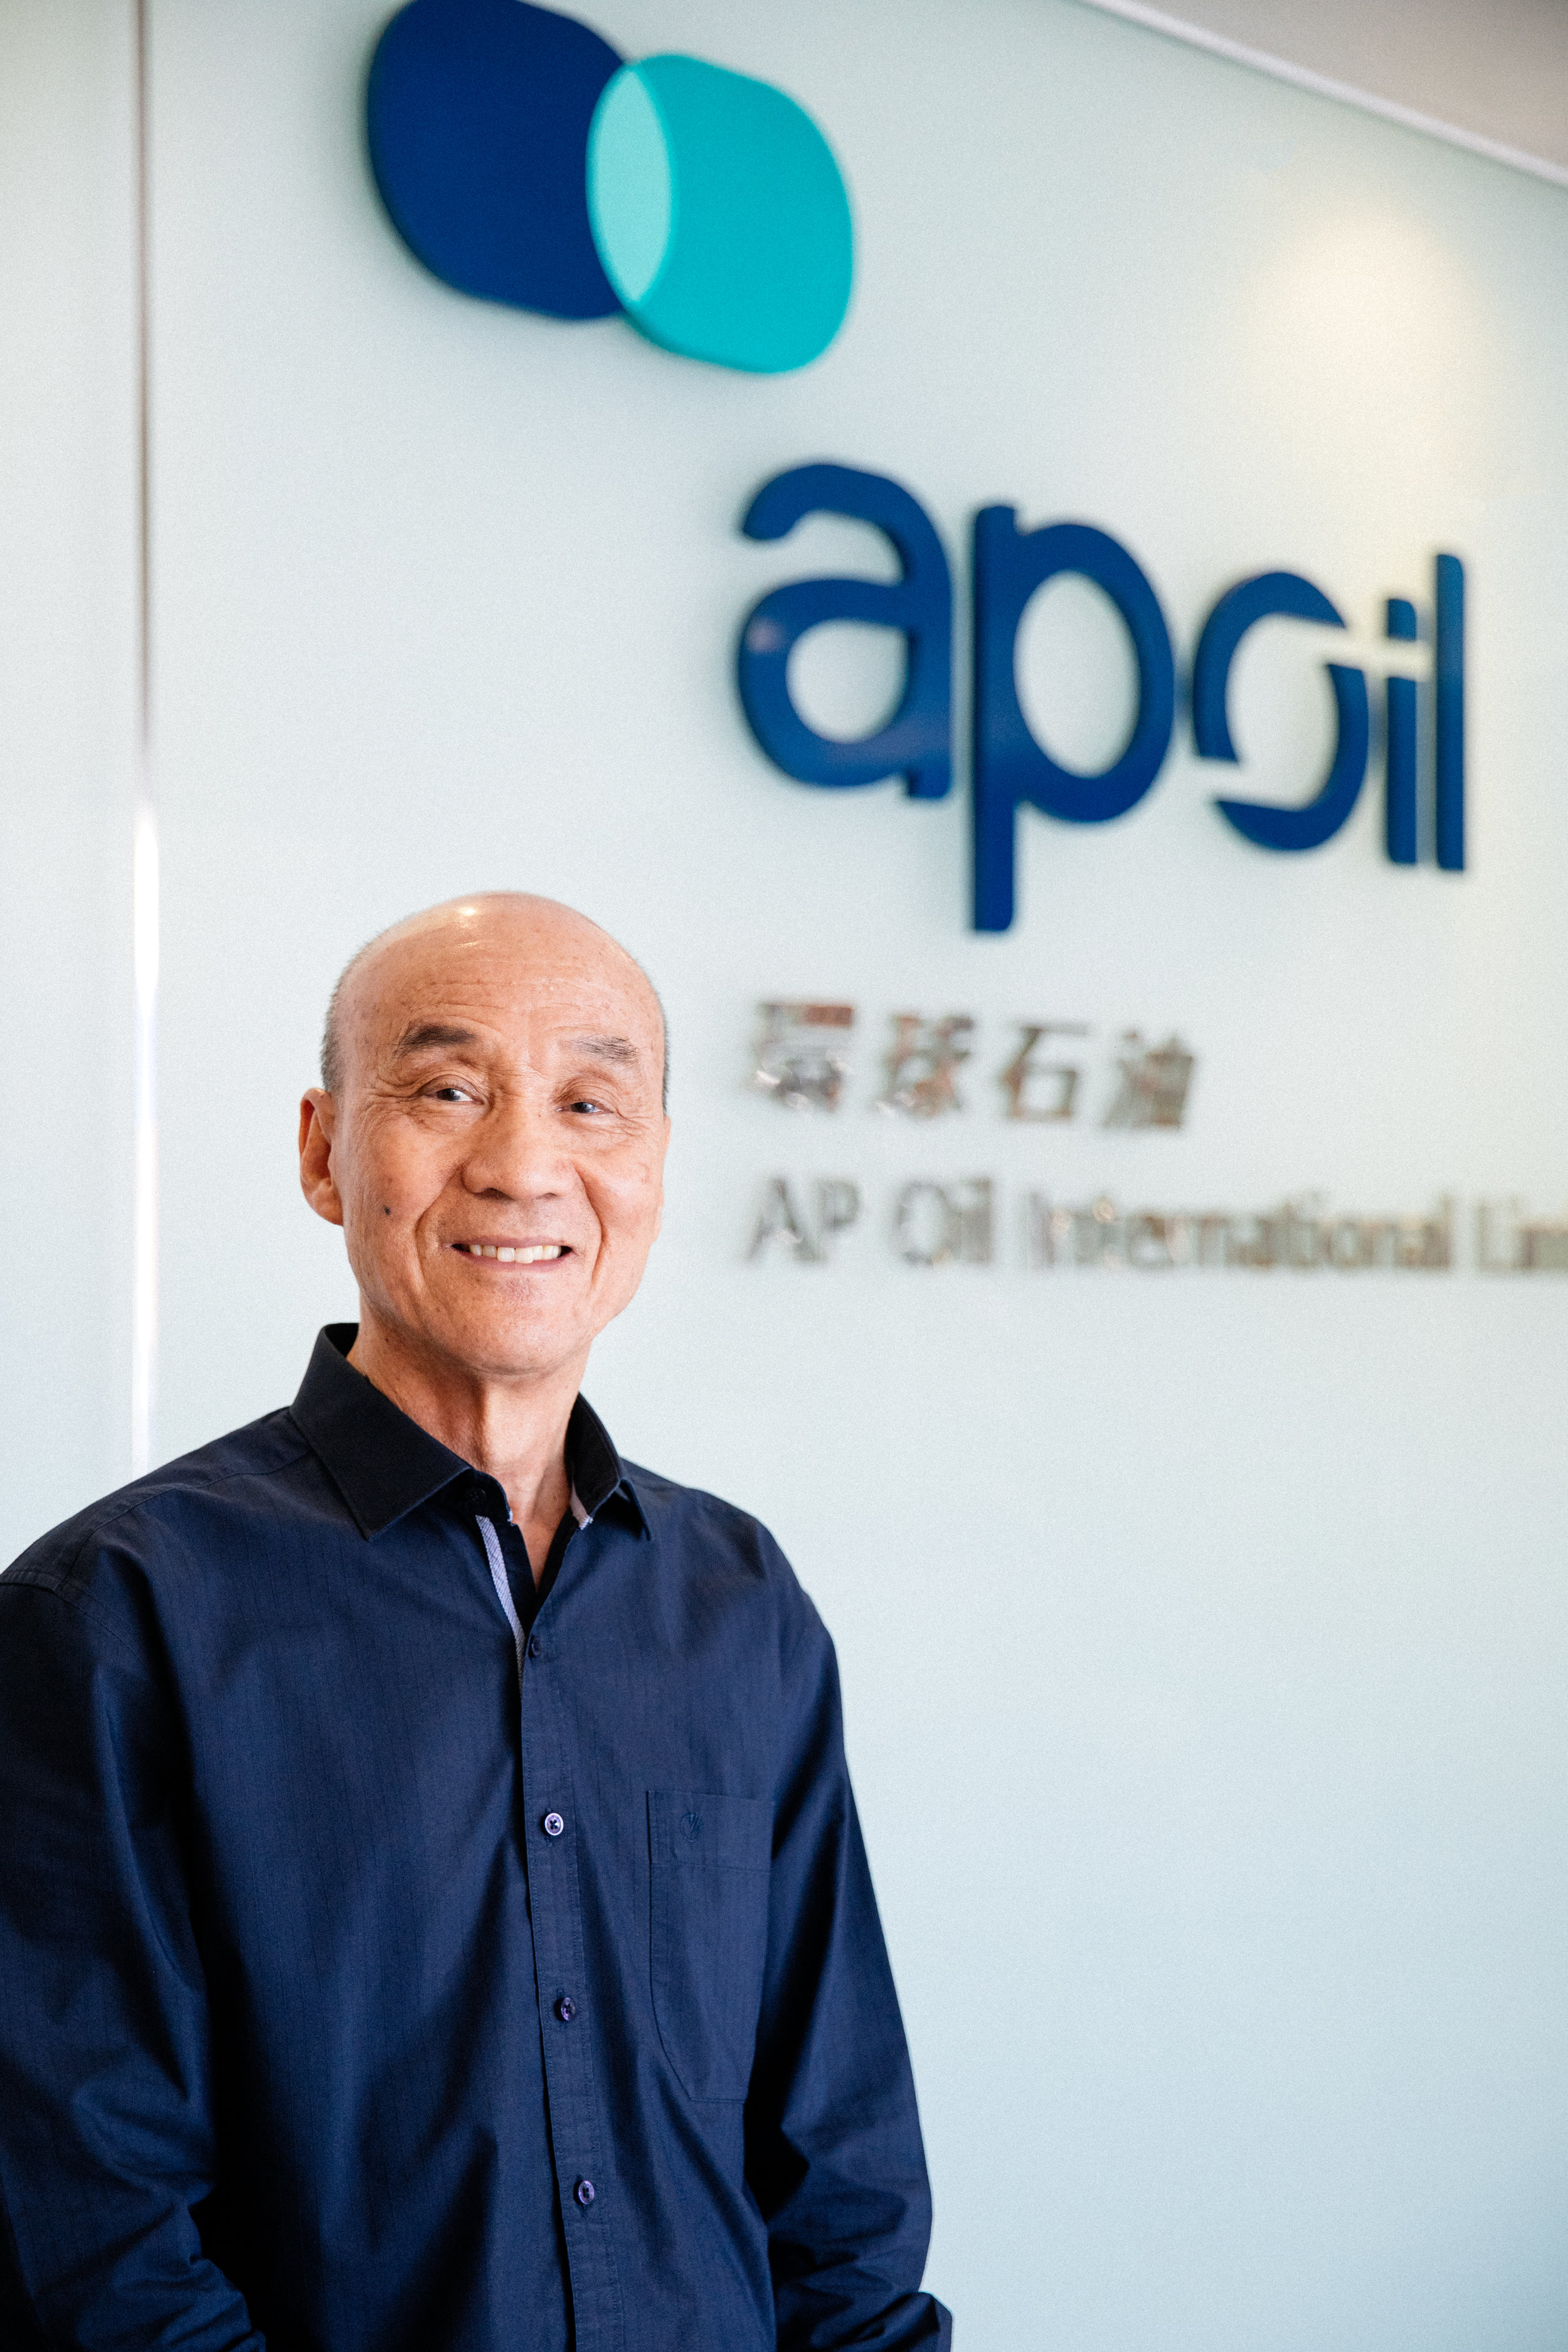  AP Oil CEO  